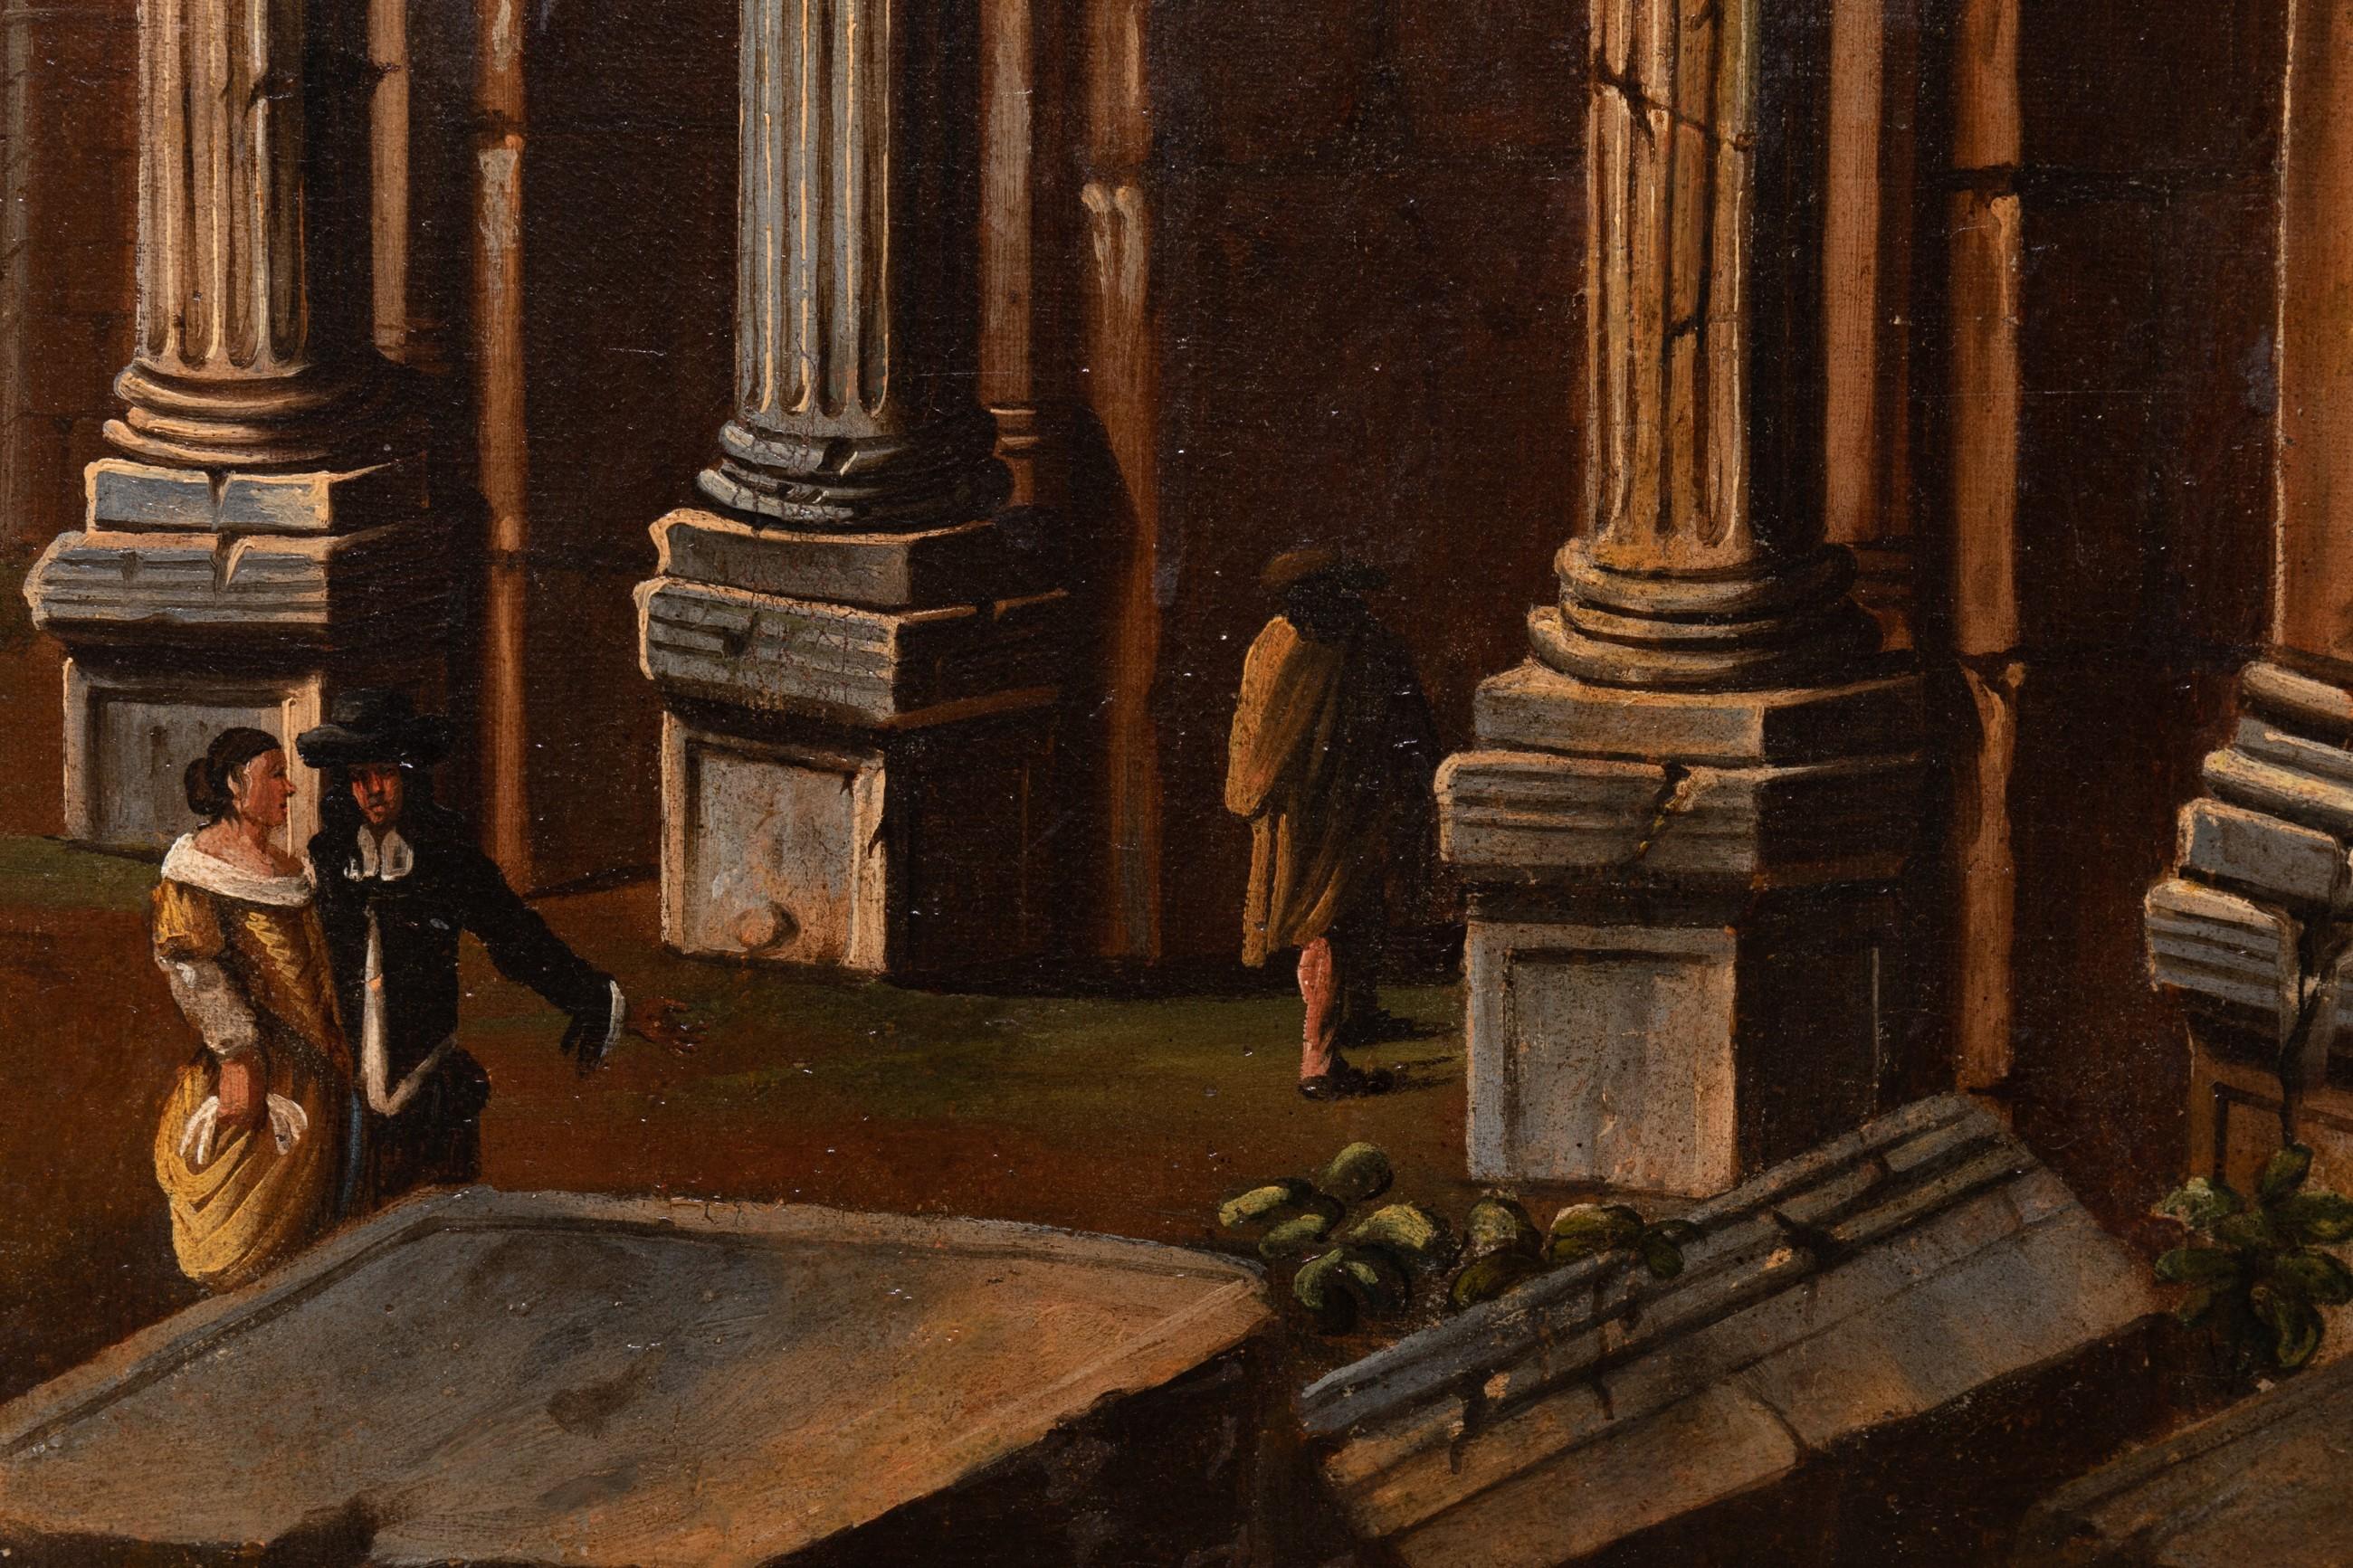 A capriccio with the Colosseum in Roma
17th century Italian school
Circle of Viviano Codazzi (1604-1670)
Oil on canvas
Dimensions: h. 35.43 in, w. 51.18 in
Modern 17th century style frame with “a la Berain” decor
Framed dimensions: h. 40.94 in, w.